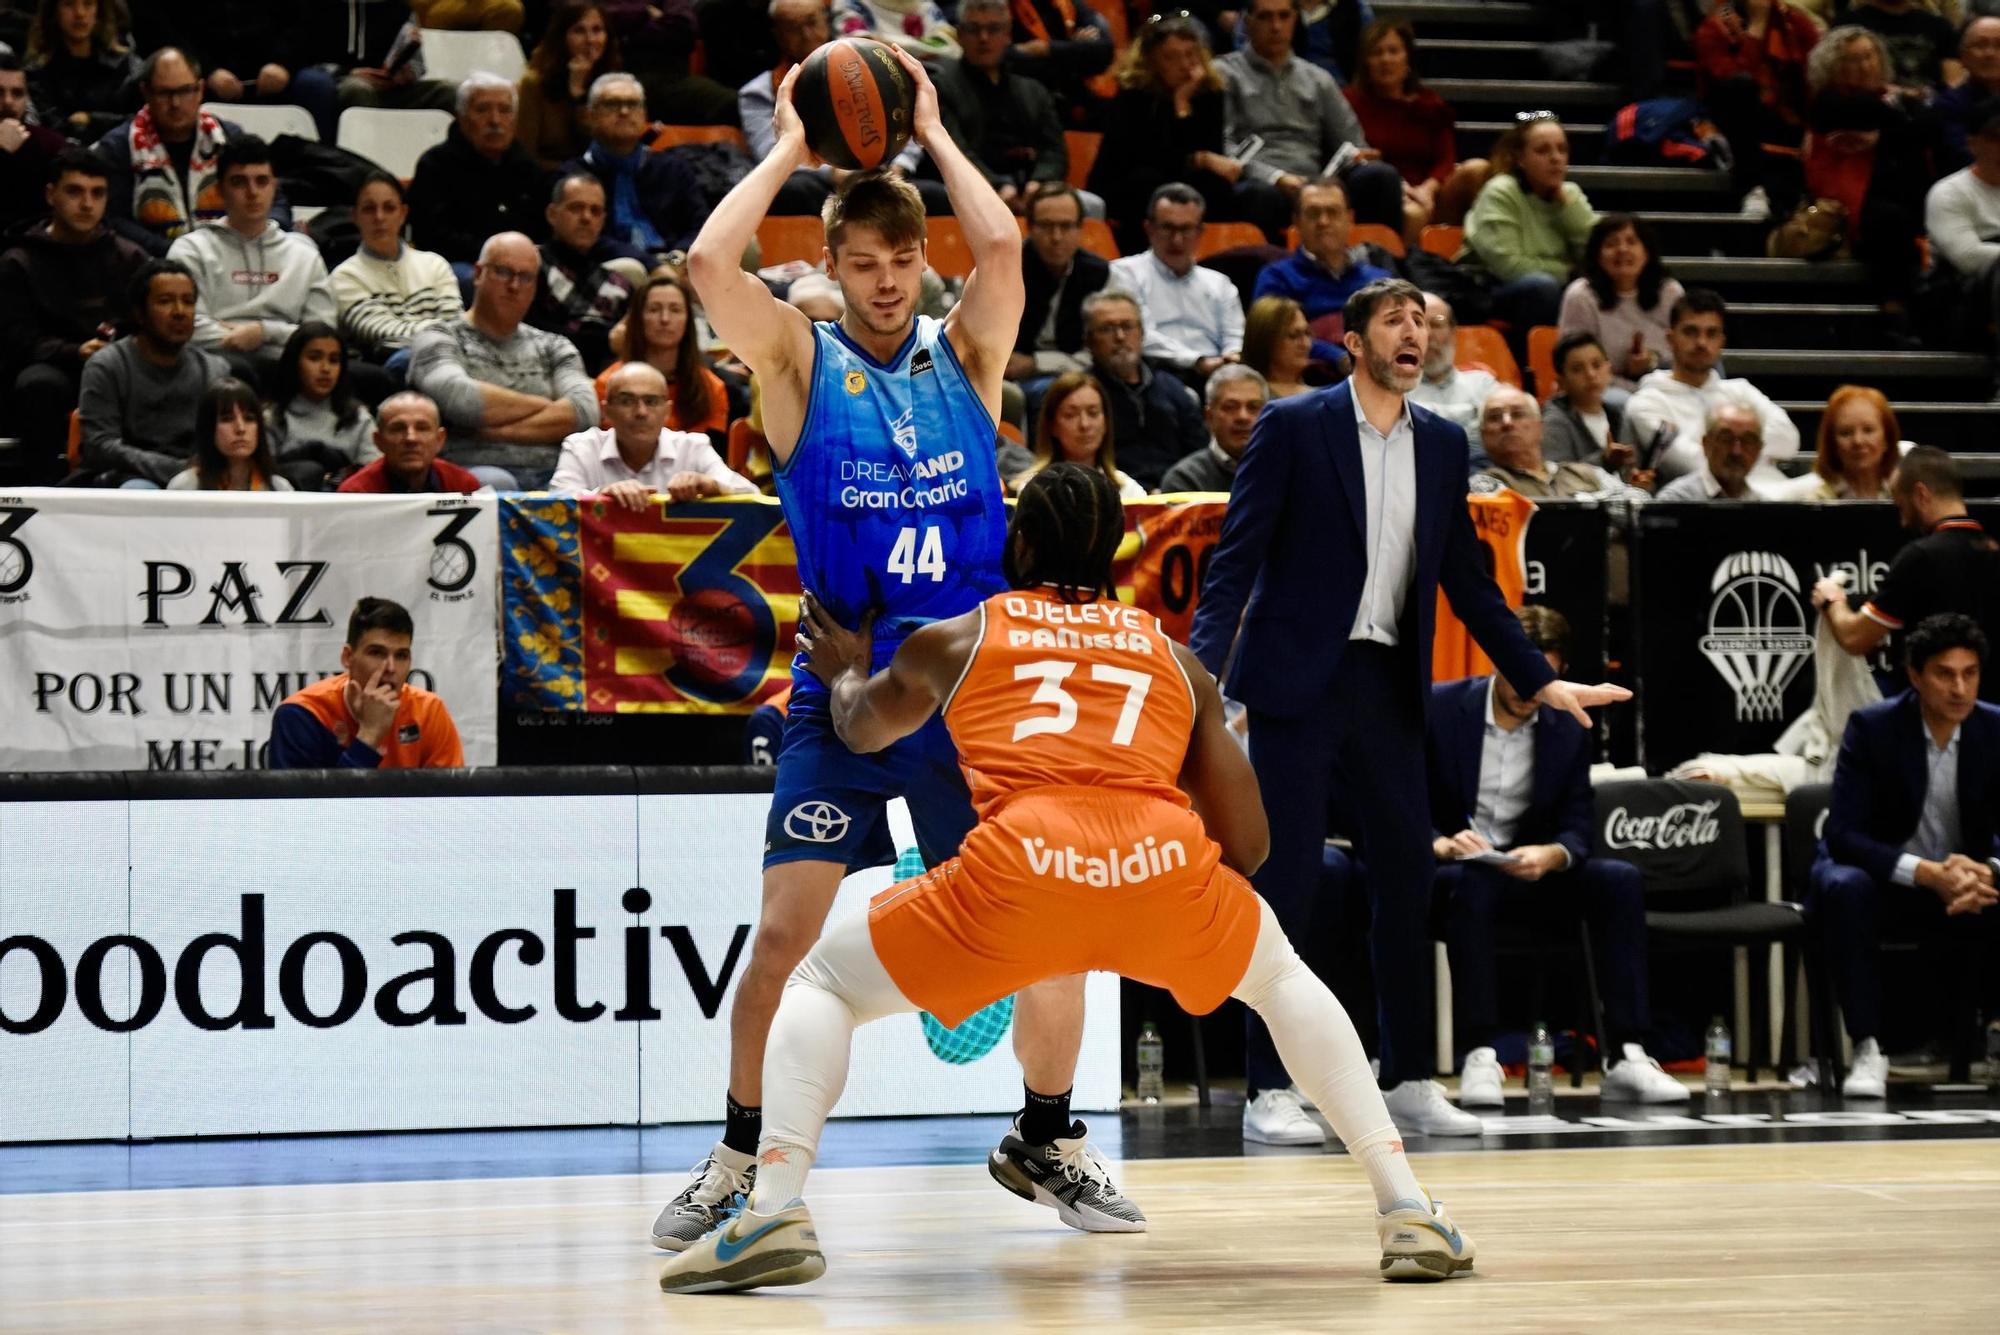 Revive el Valencia Basket - Dreamland Gran Canaria